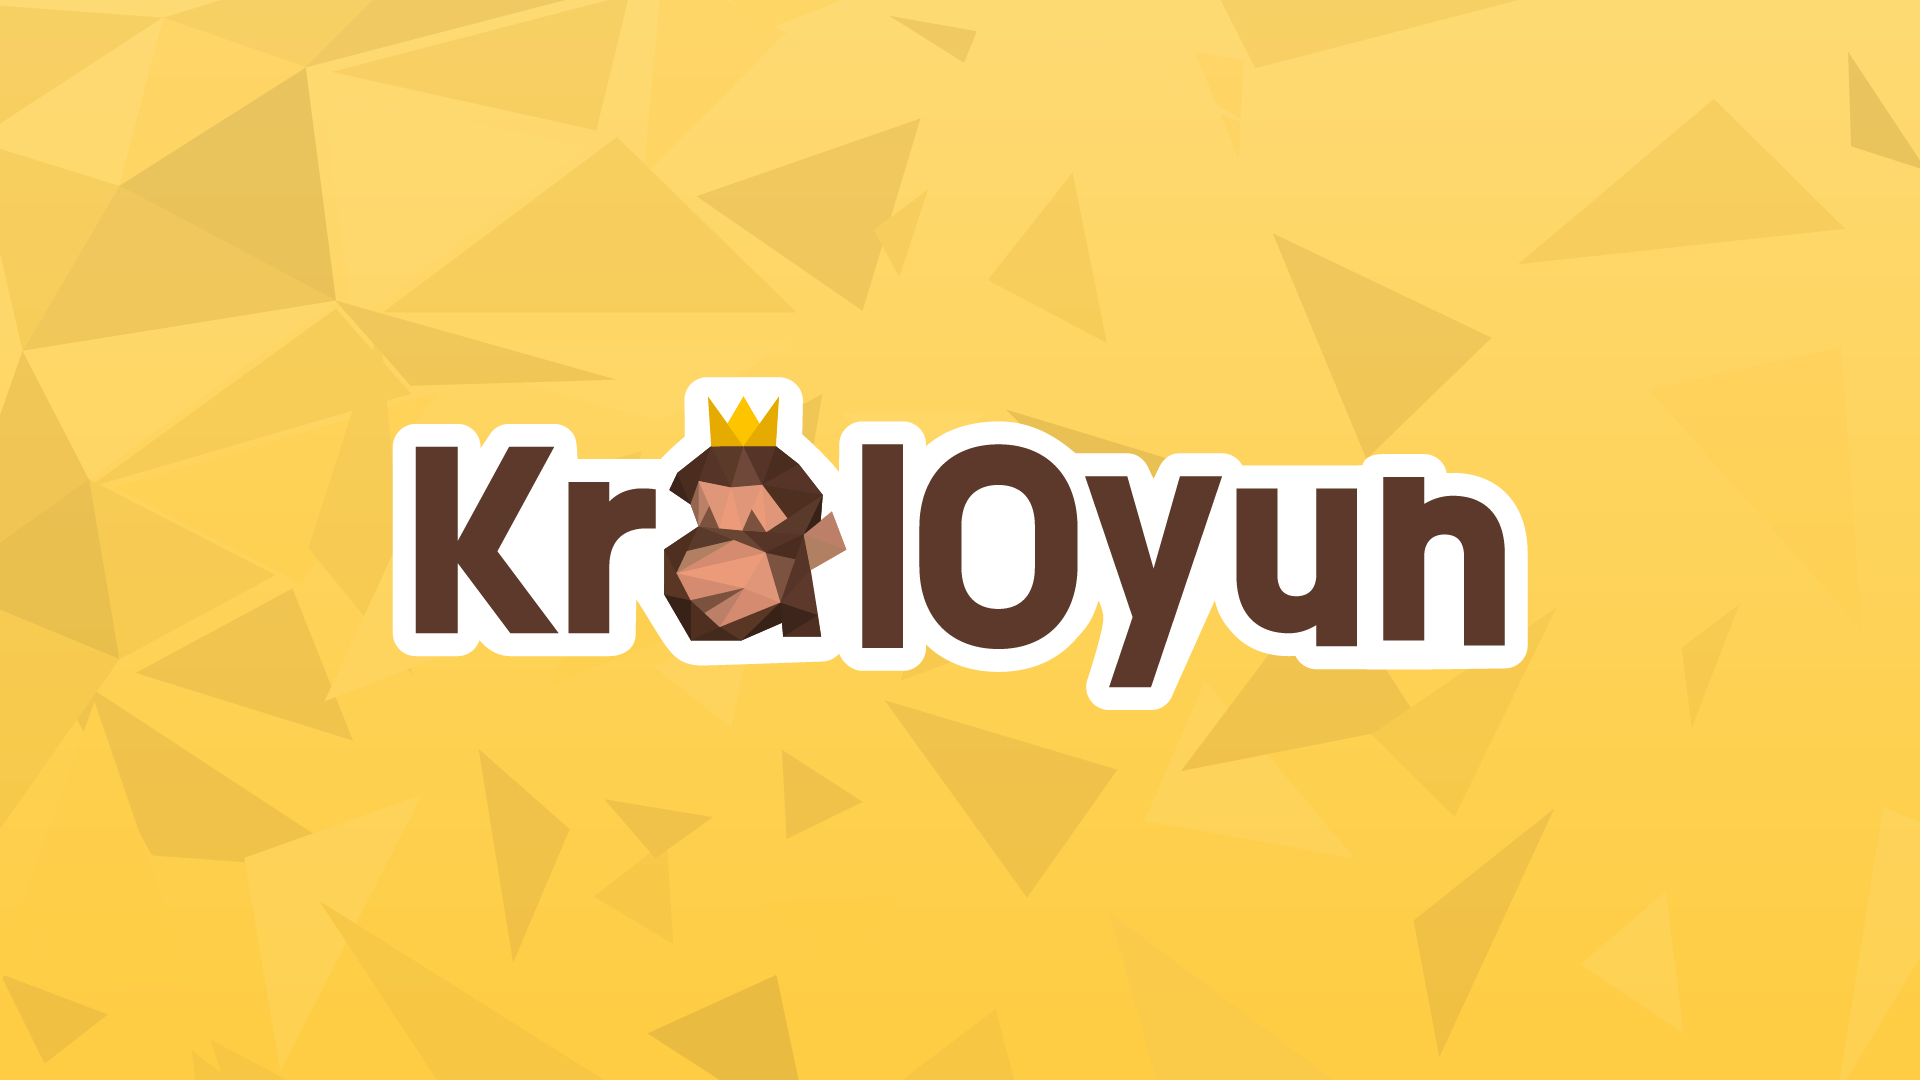 (c) Kraloyun.com